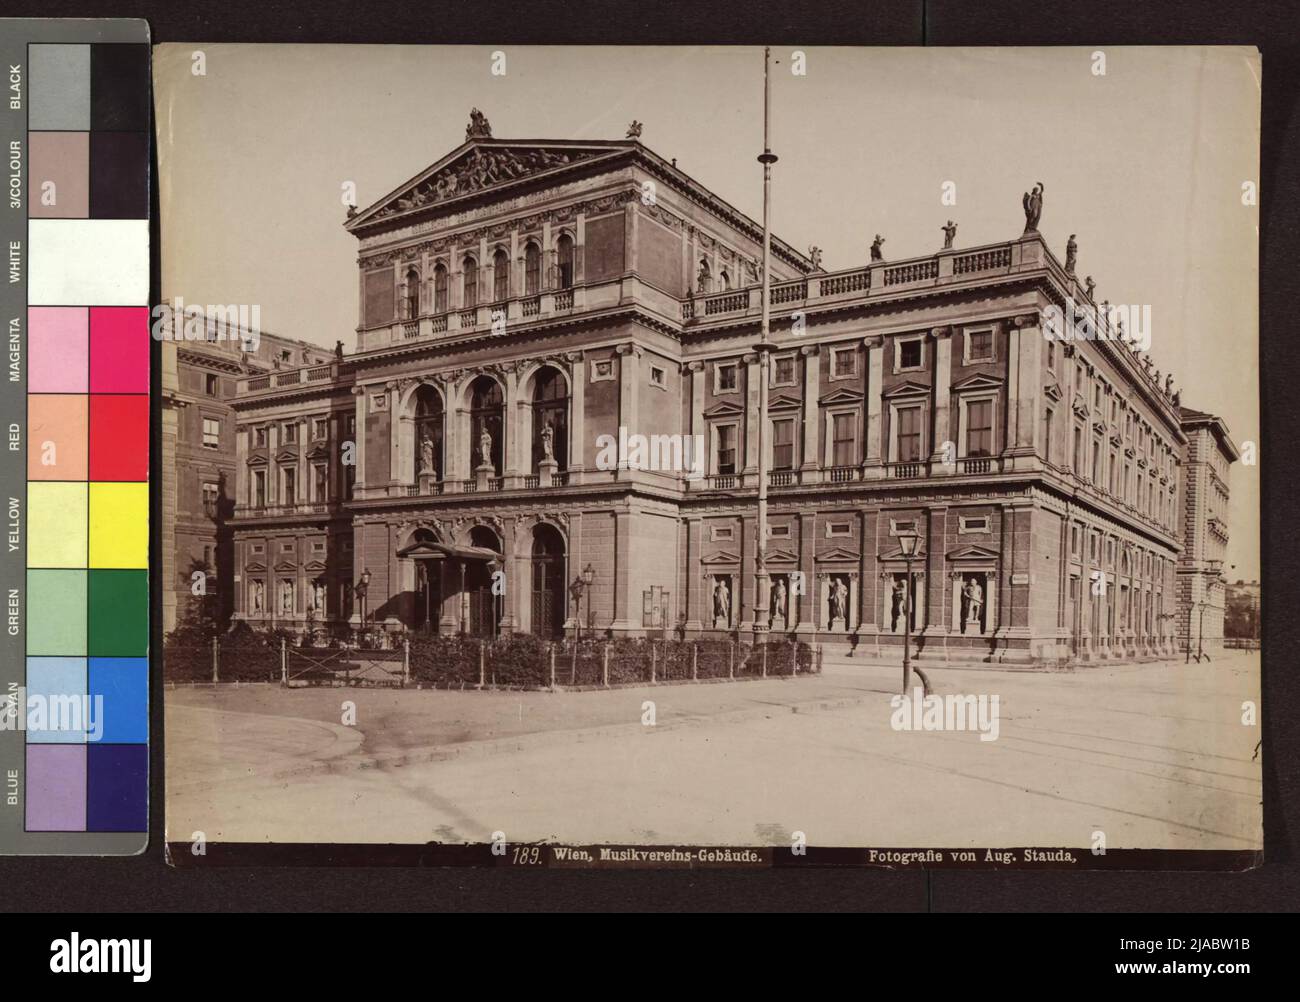 1., Dumbastraße 3 - Musikverein (Casa della Società di Musica Freunde). Agosto Stauda (1861-1928), fotografo Foto Stock